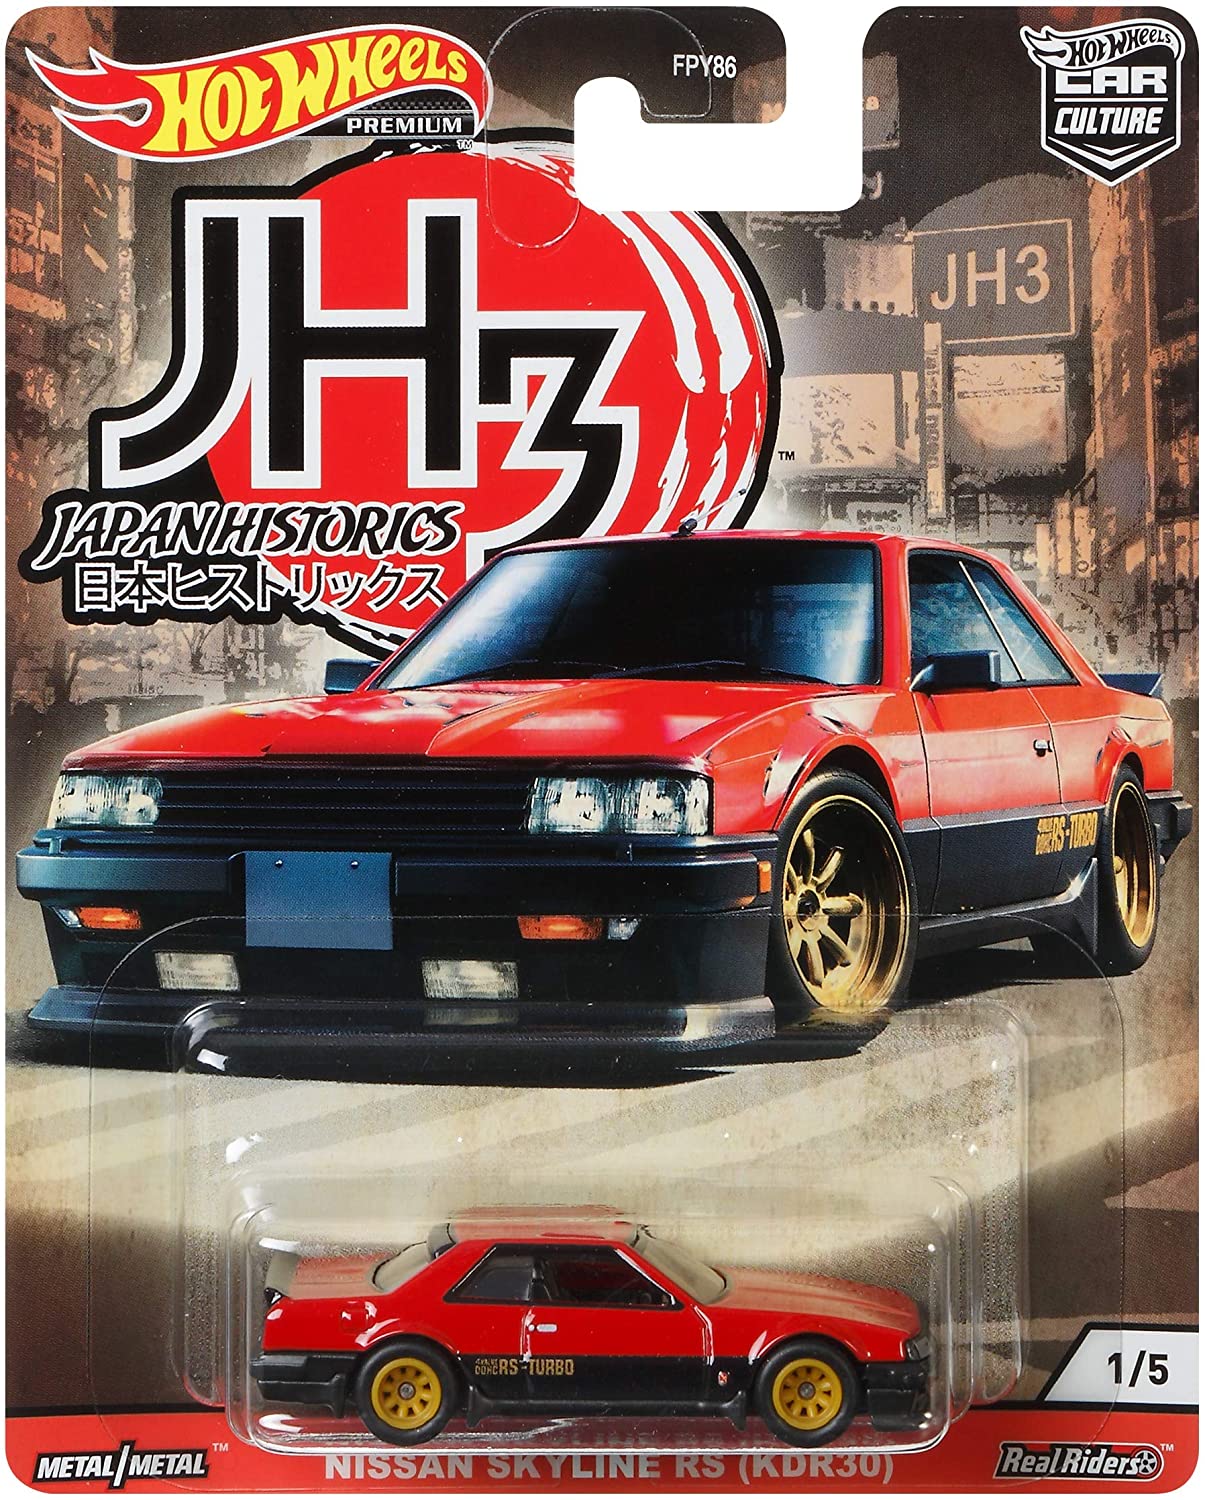 Hot Wheels Japan Historics 3 Nissan Skyline RS (KDR30) Red 1:64